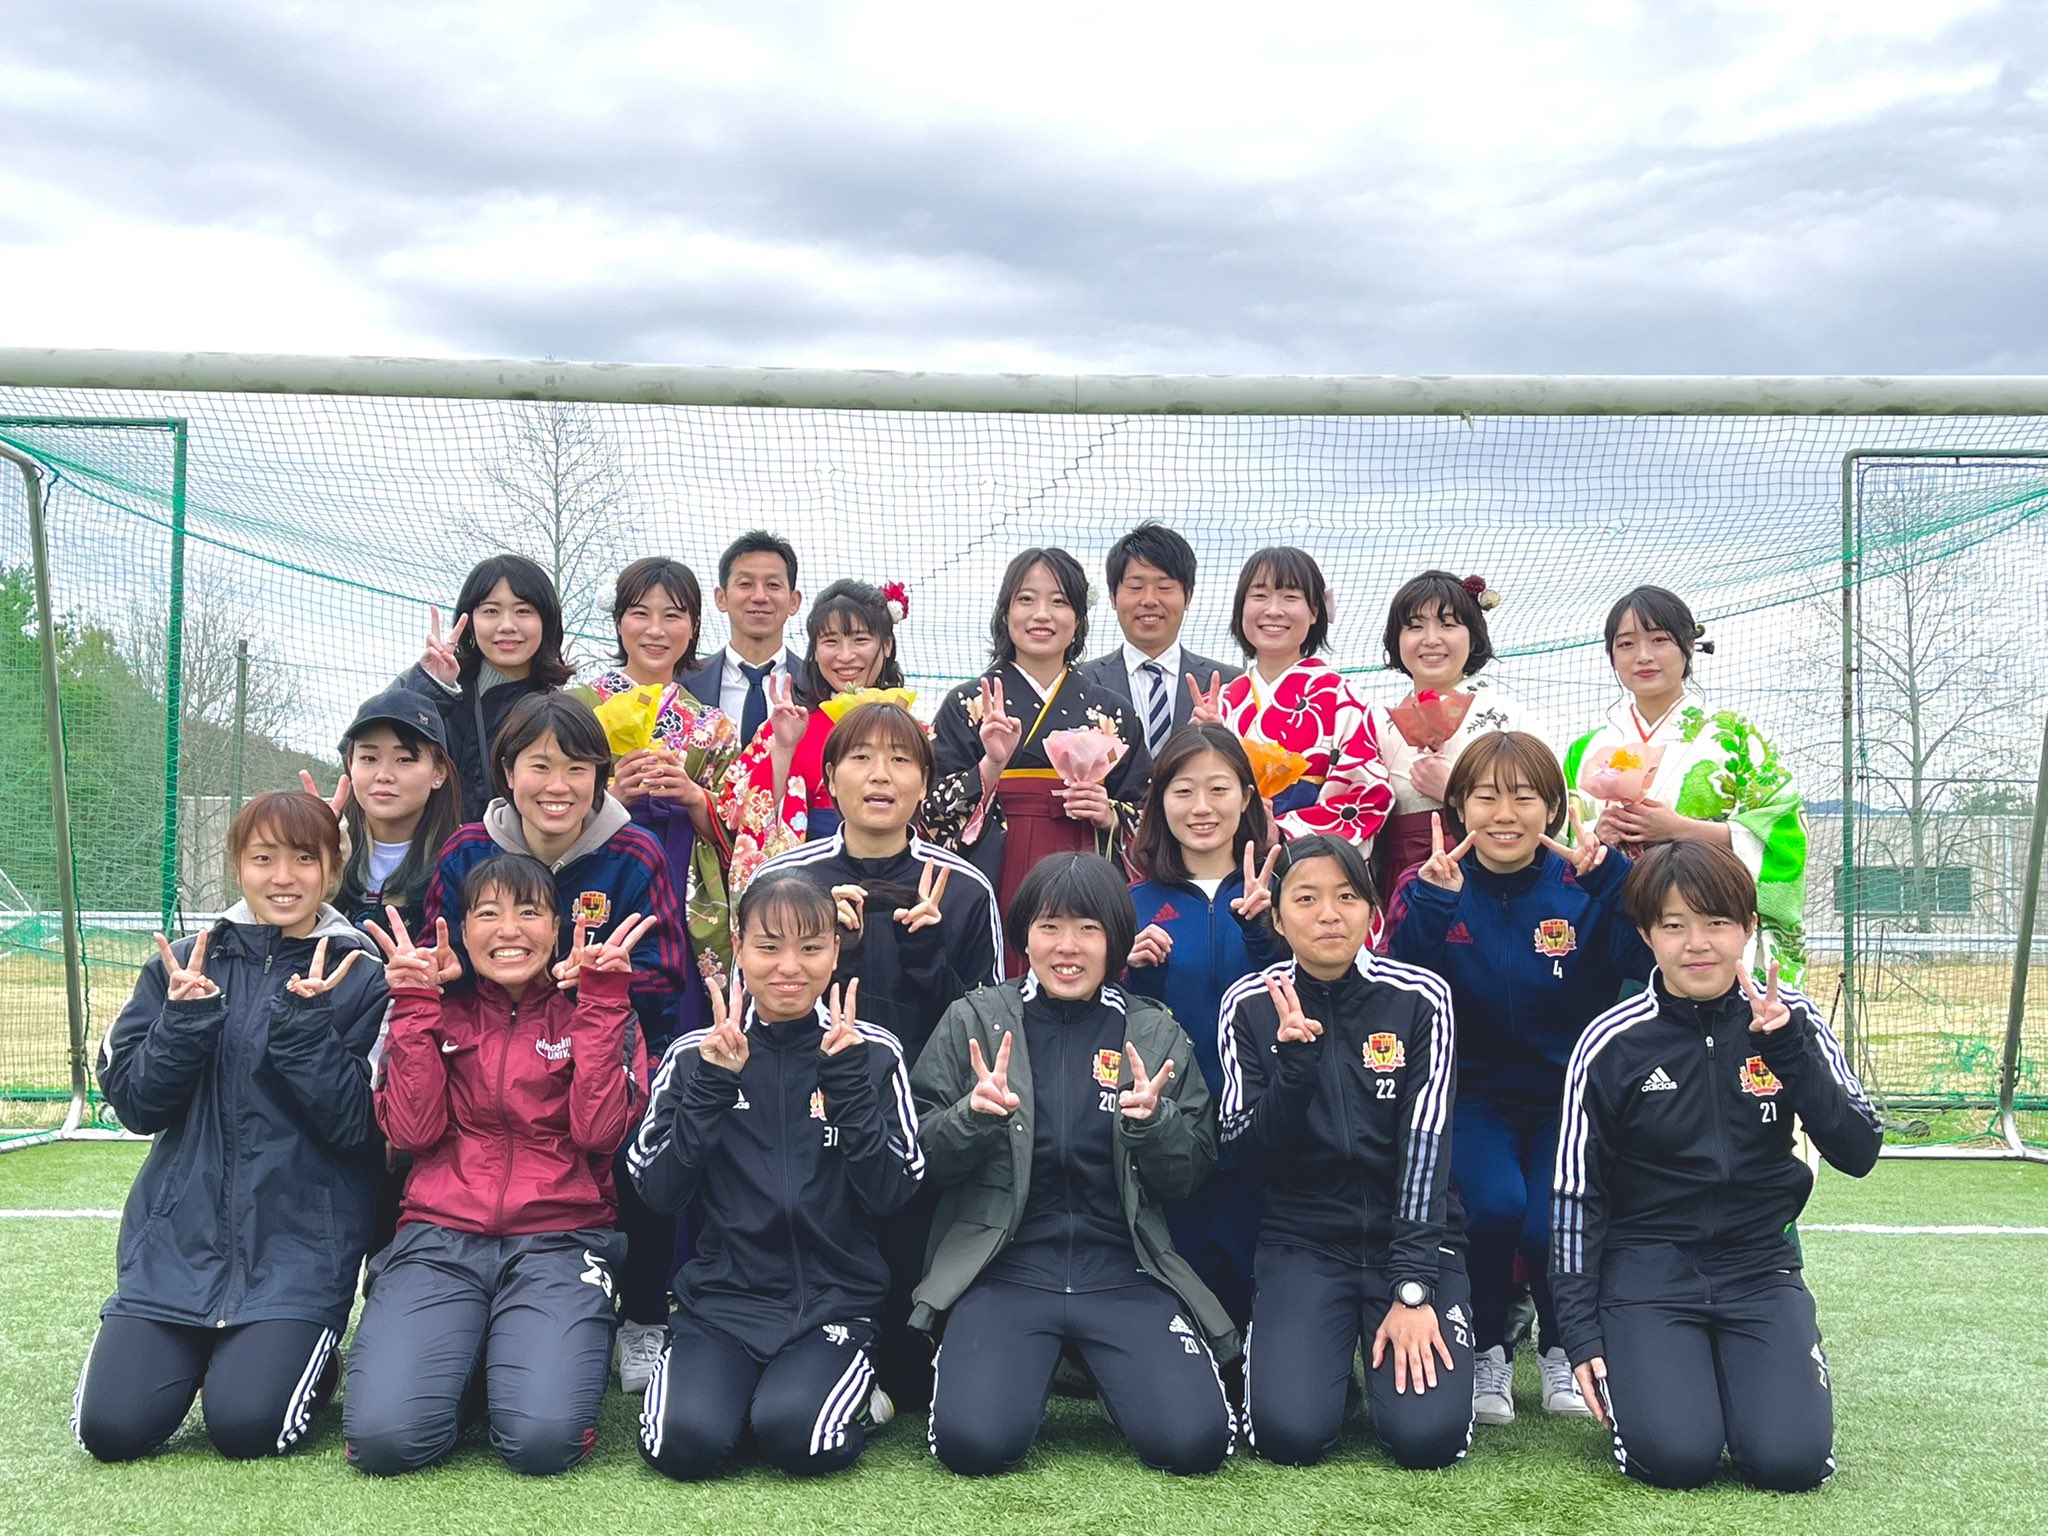 広島大学女子サッカー部 Hujosaka Twitter